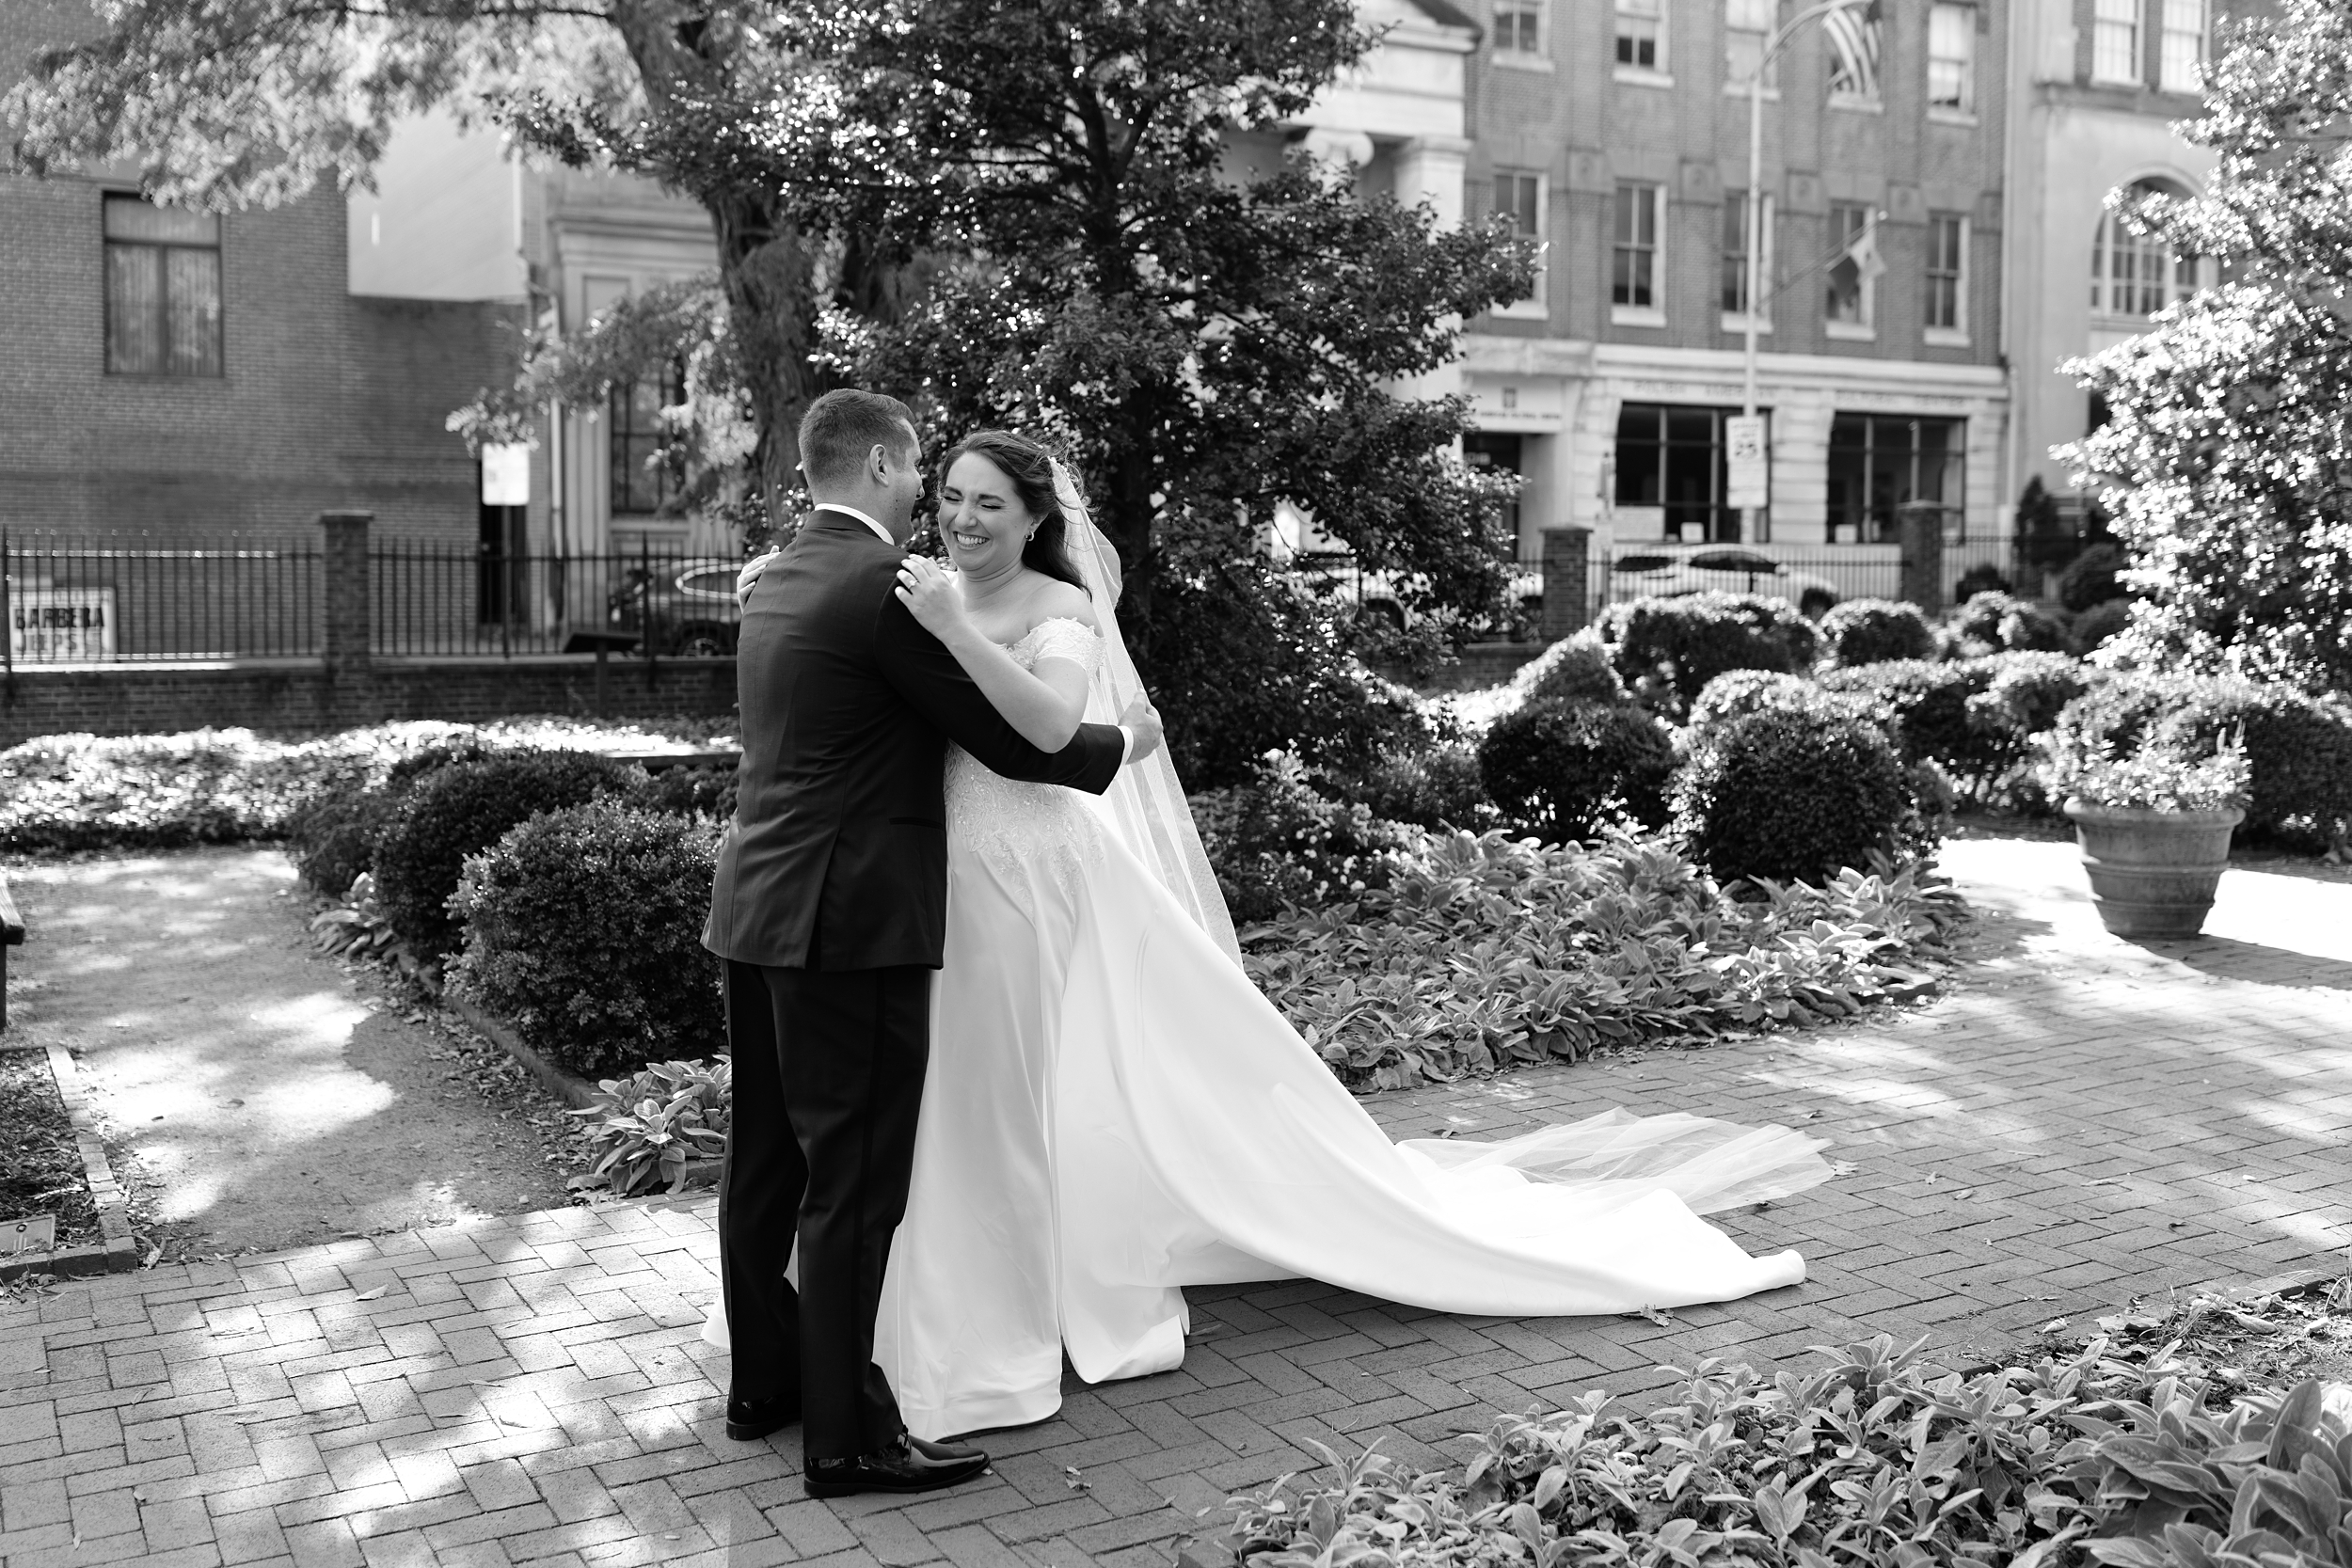 Wedding at Lilah in Fishtown Philadelphia, Philadelphia Pa Wedding Photographer